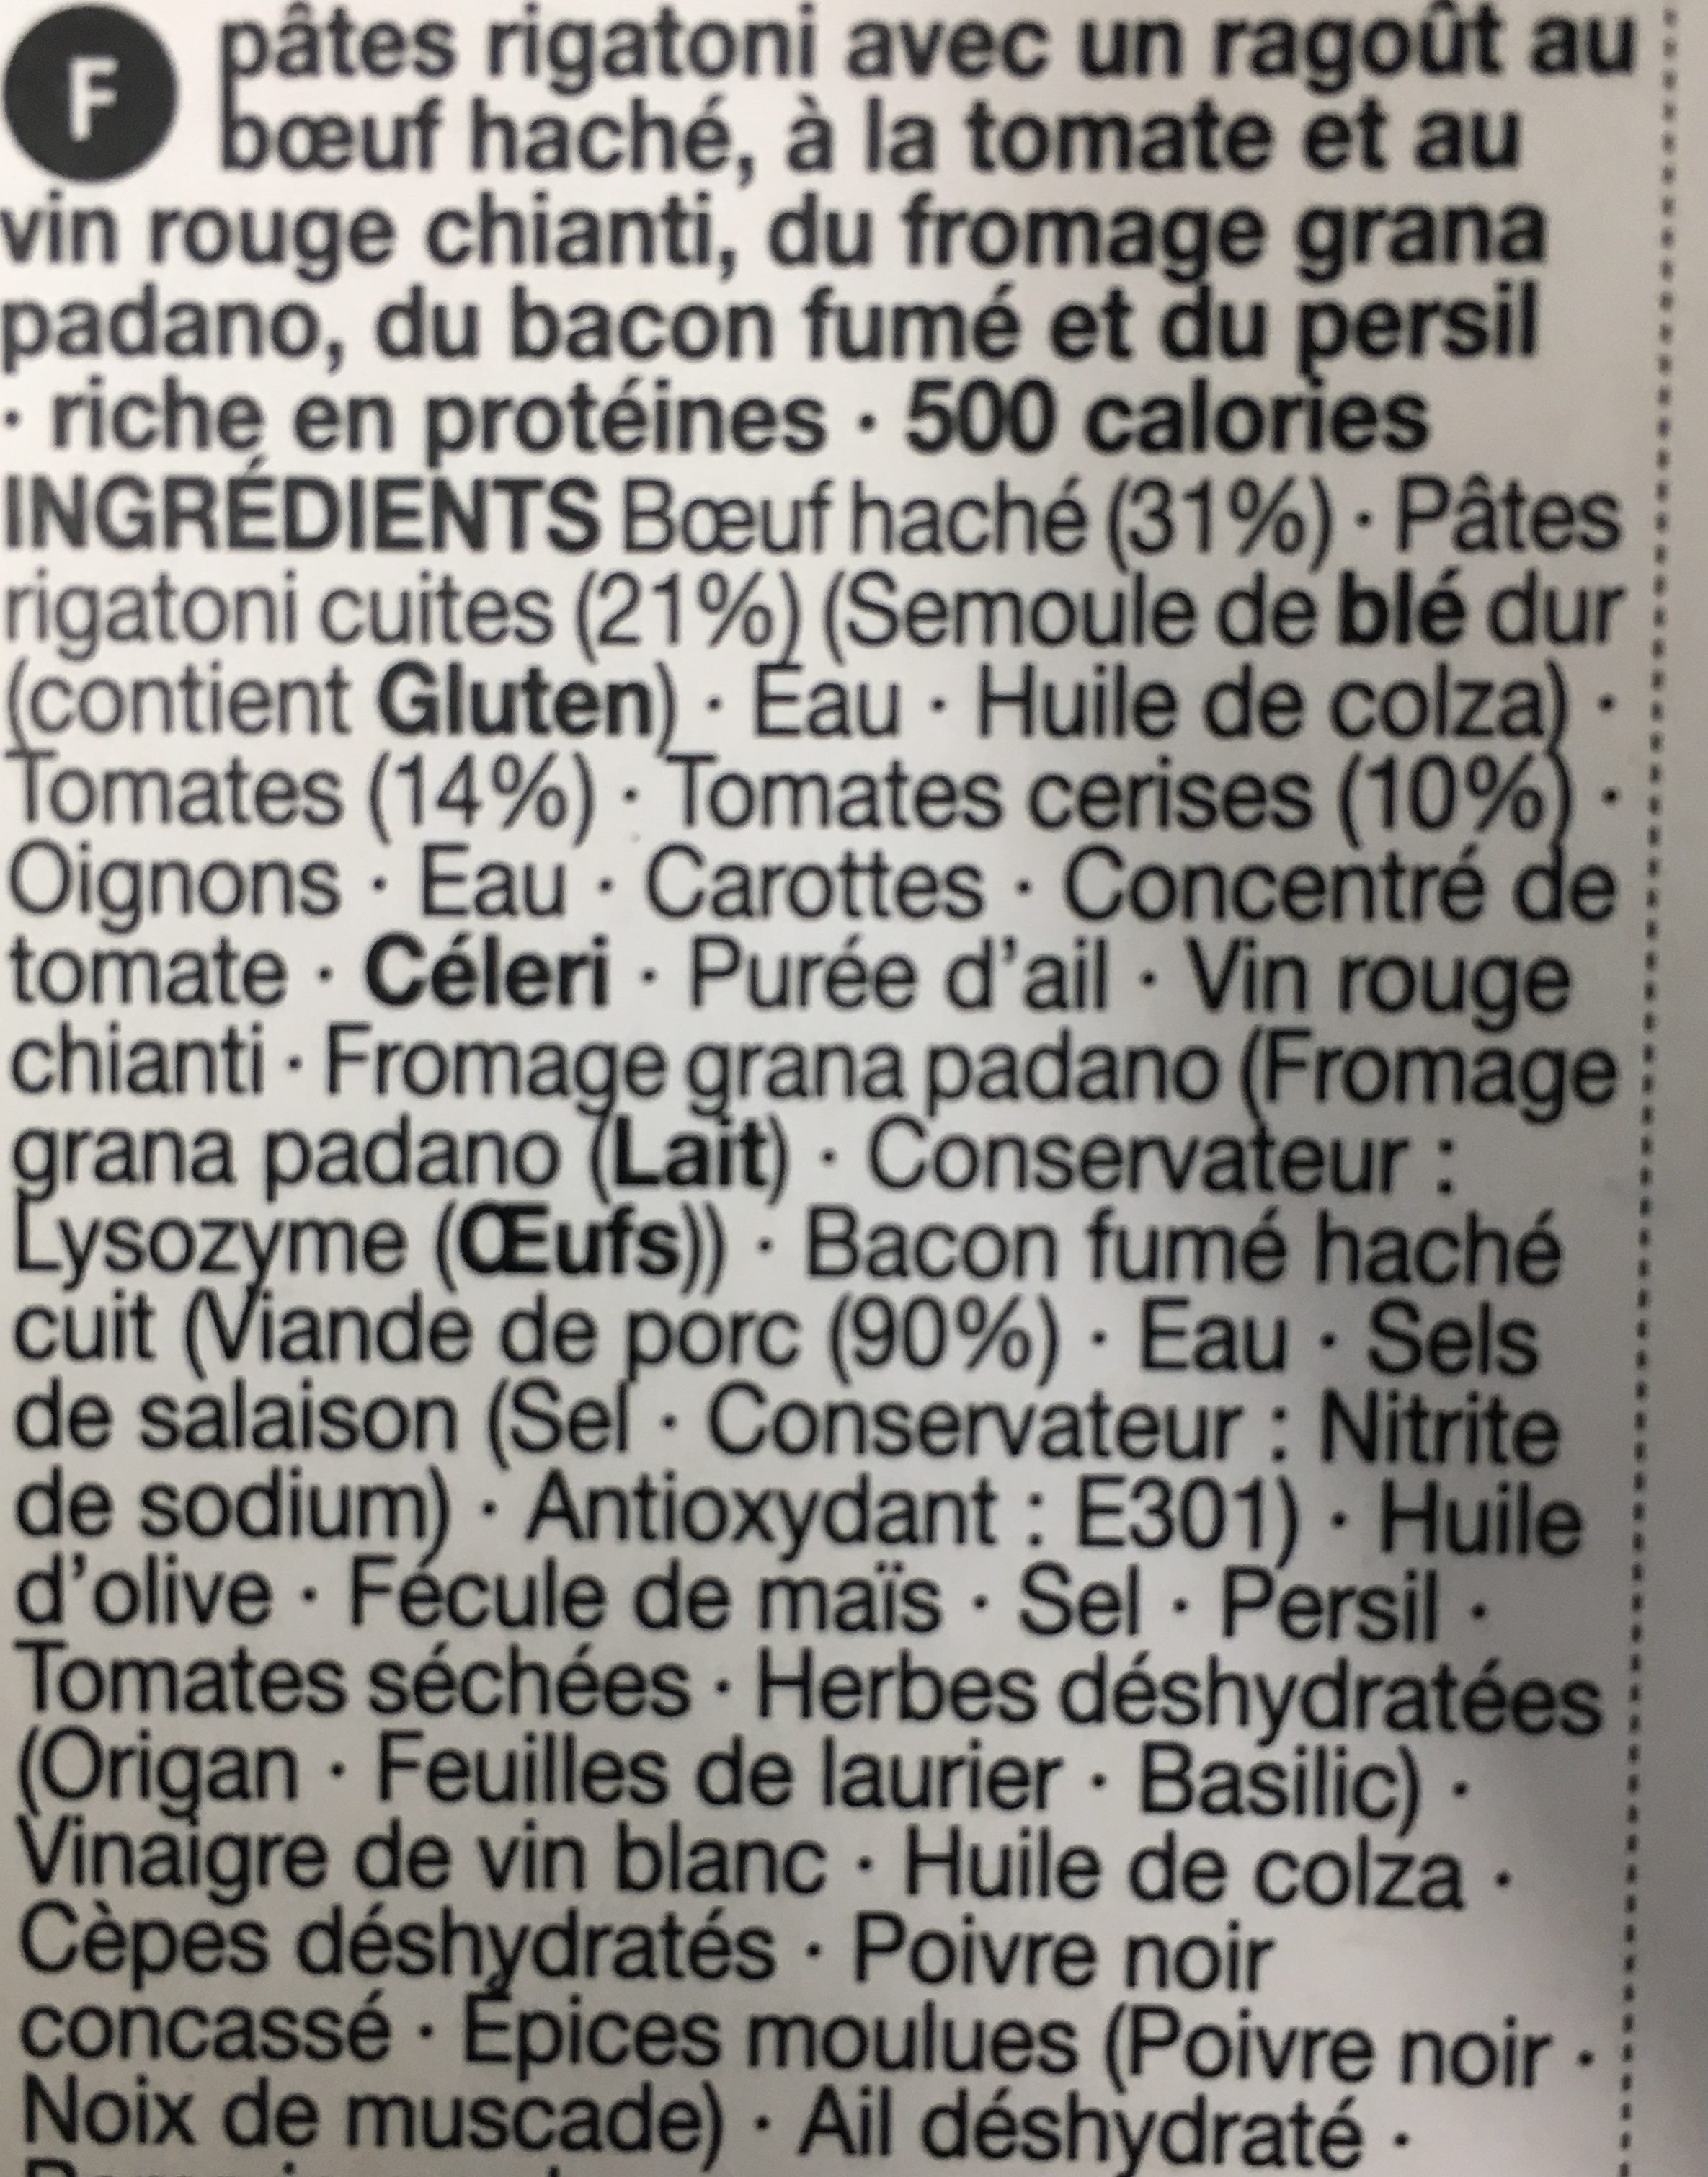 Beef & chianti ragu - Ingredients - fr